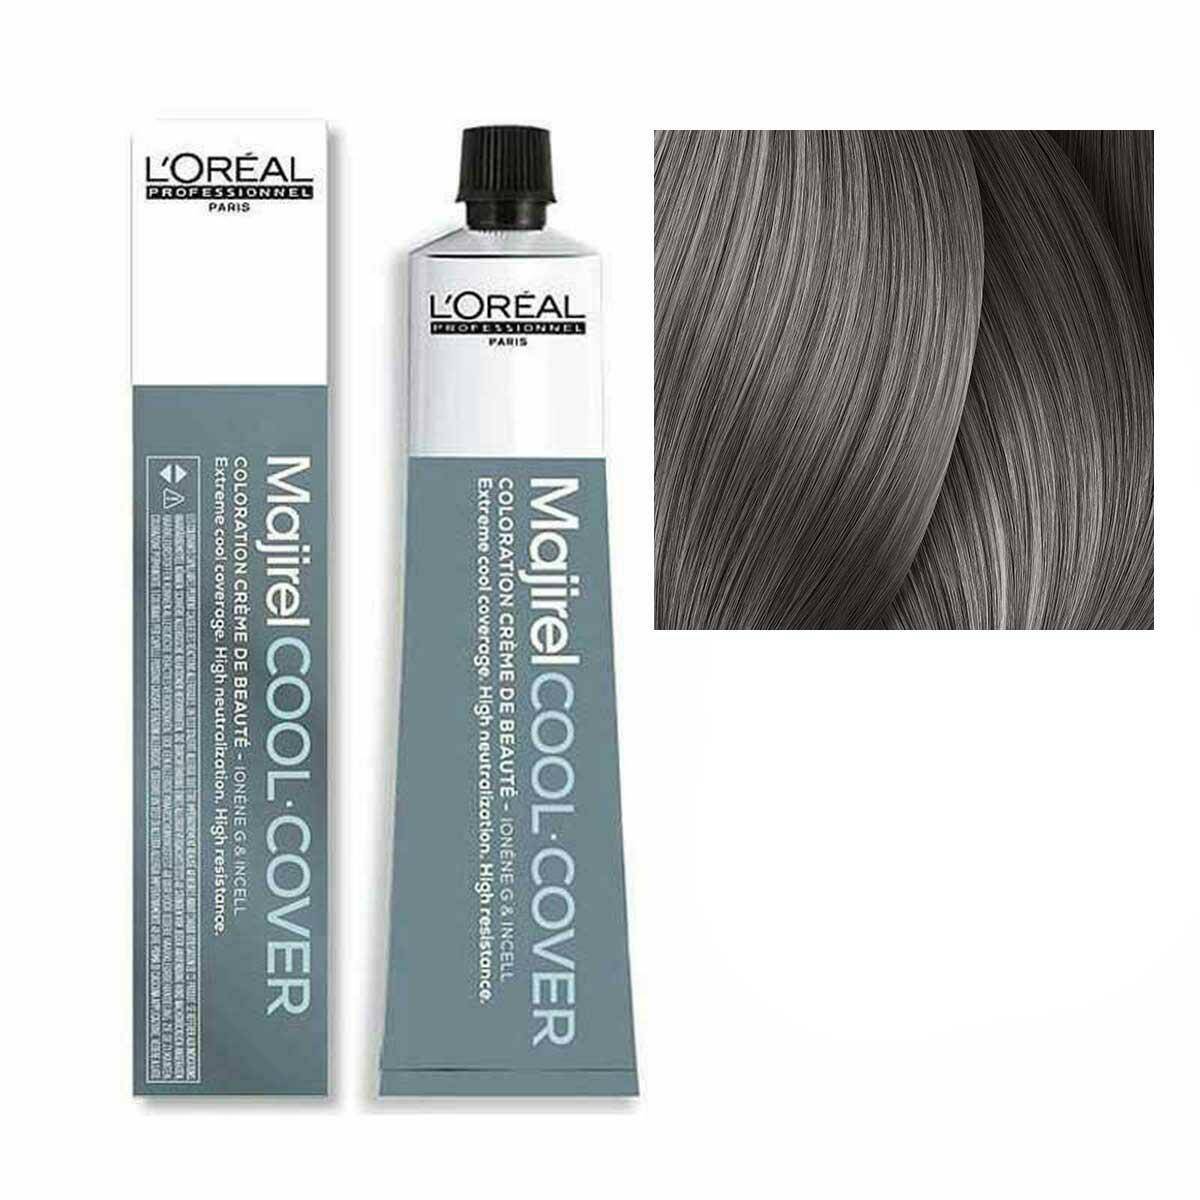 Loreal Majirel Cool Cover Farba do włosów - 8.11 Jasny blond popielaty głeboki, chłodne odcienie 50ml